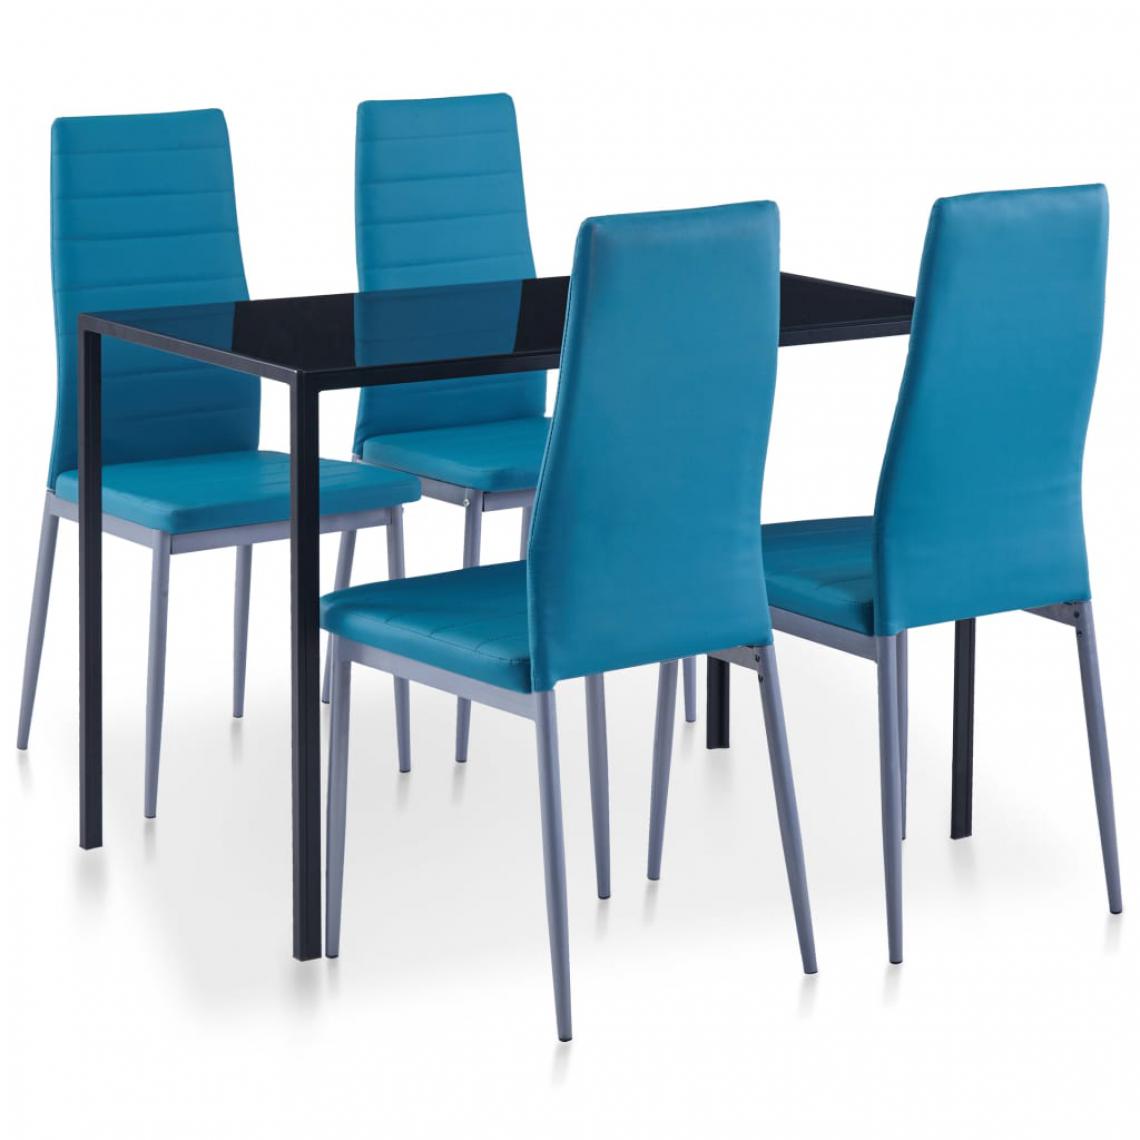 Chunhelife - Ensemble de salle à manger 5 pcs Bleu - Tables à manger